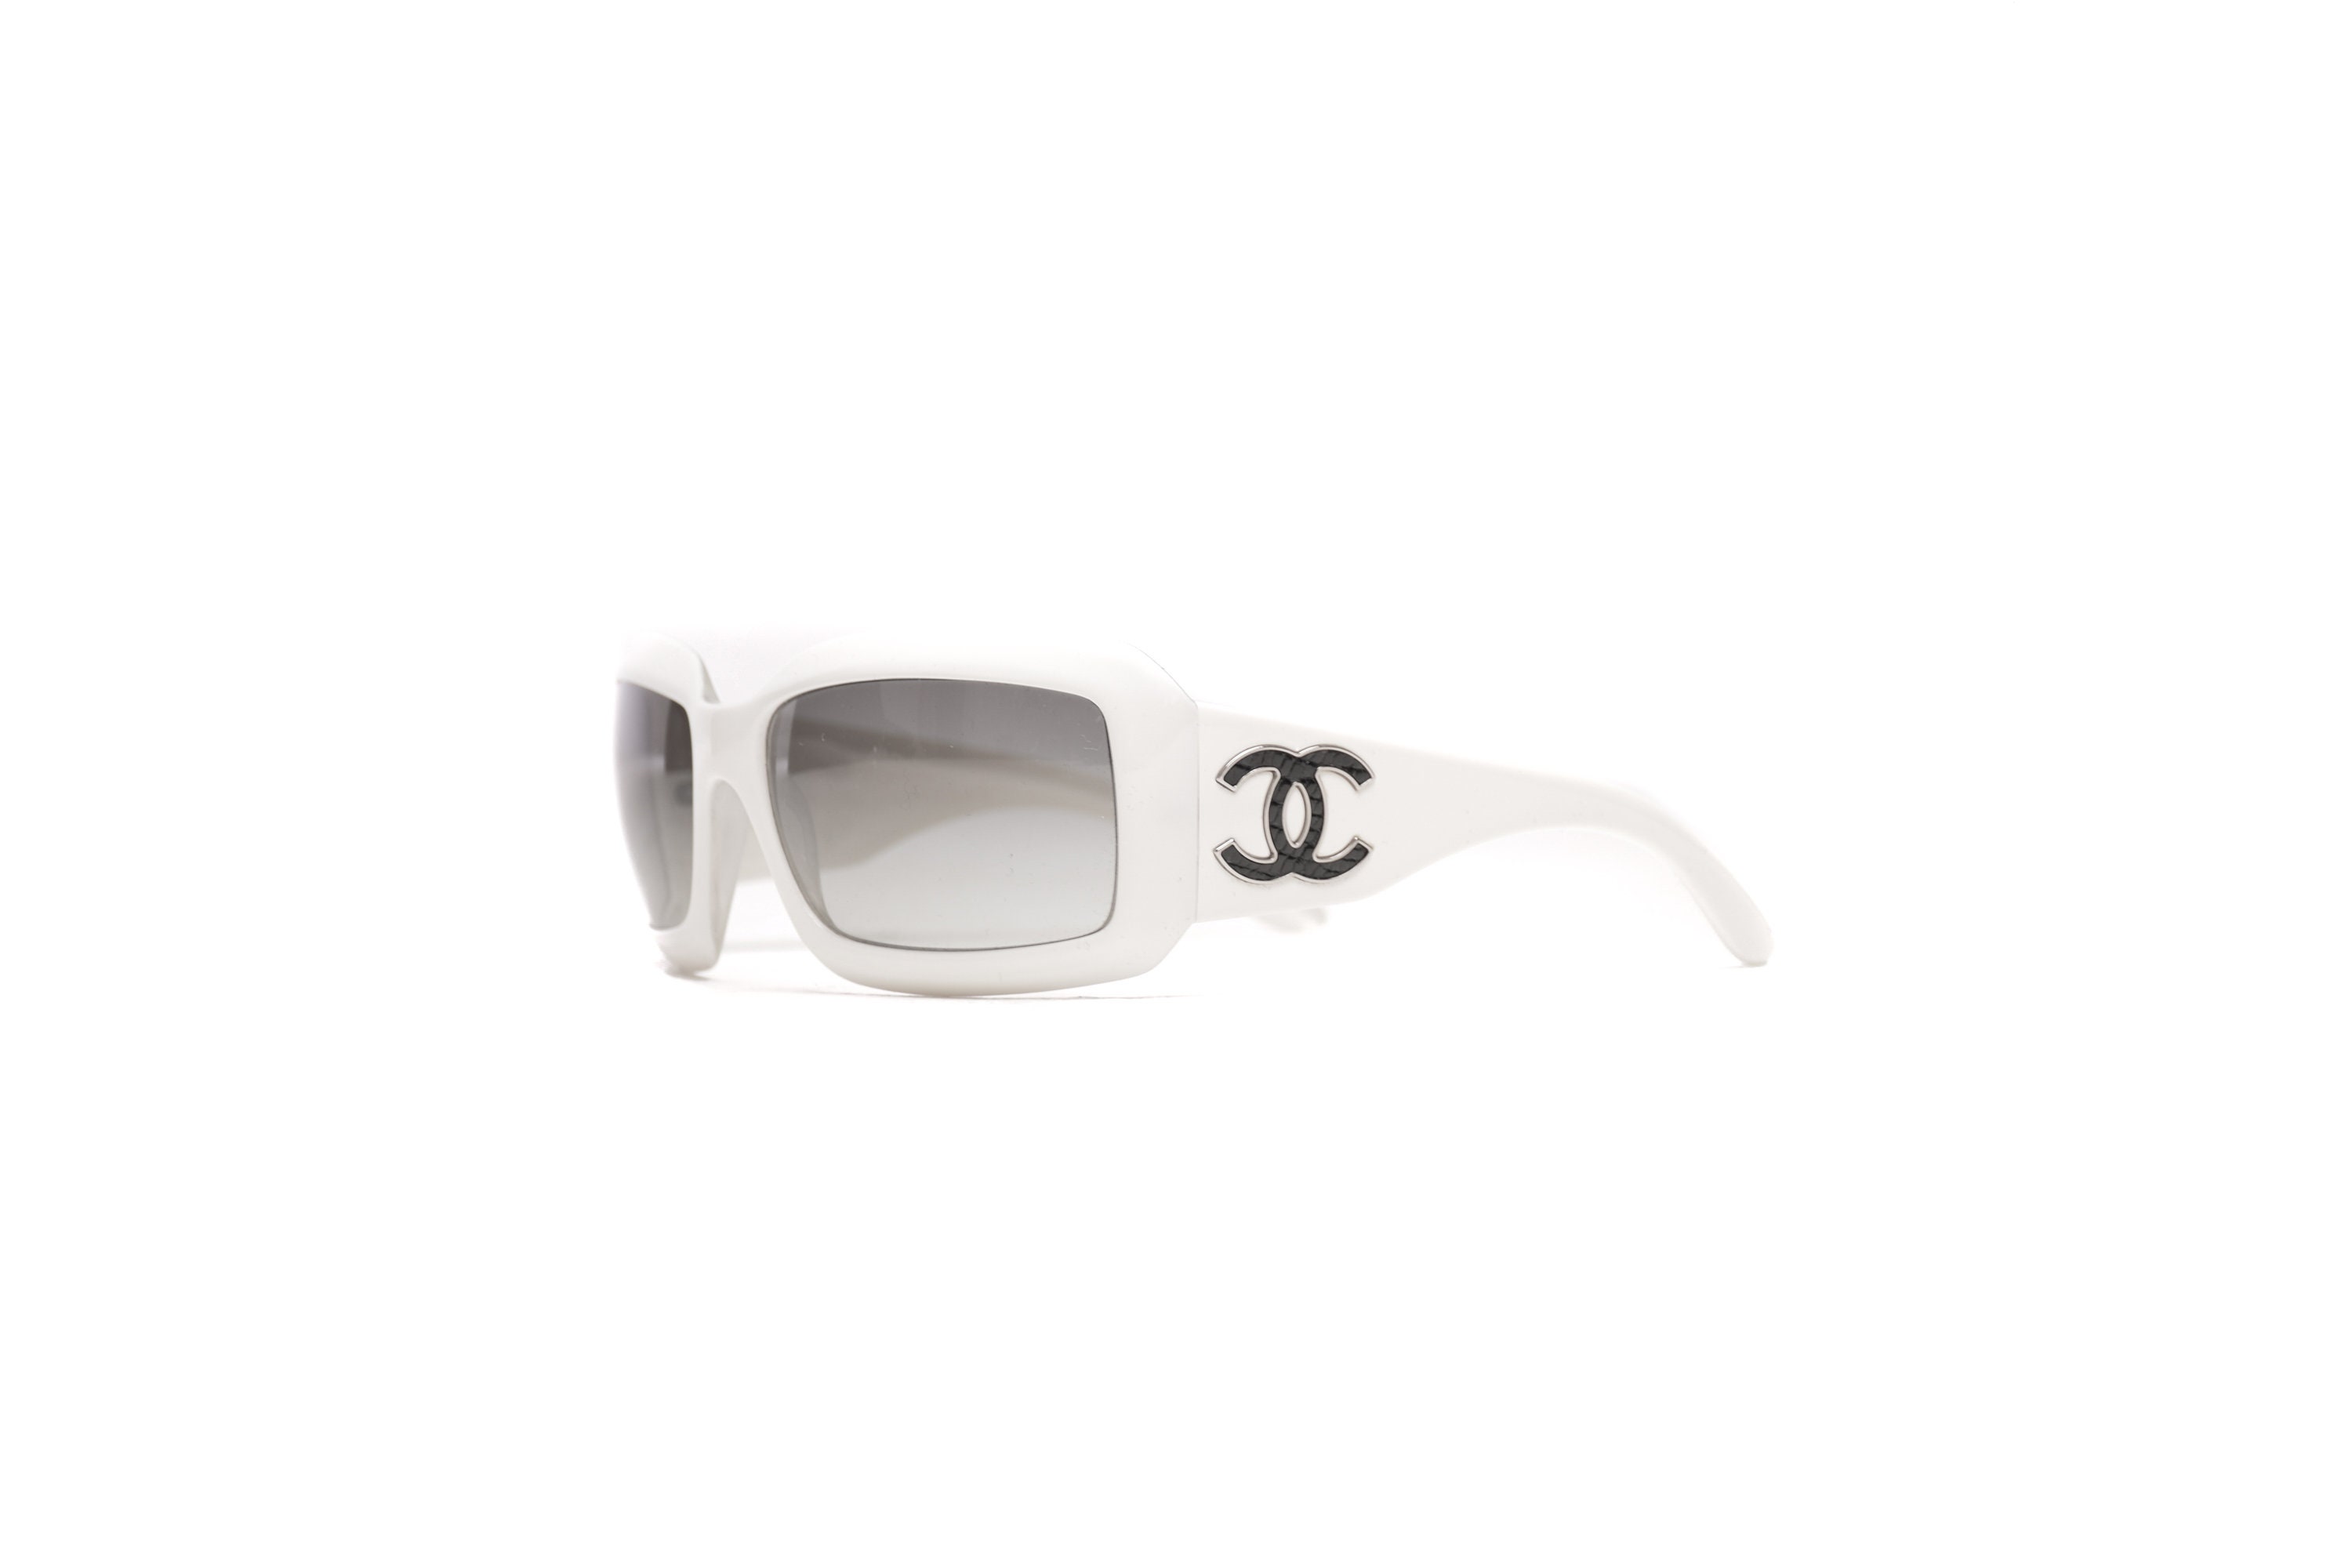 Chanel Modello 3107 Sunglasses Lunette Brille Y2k Shades 